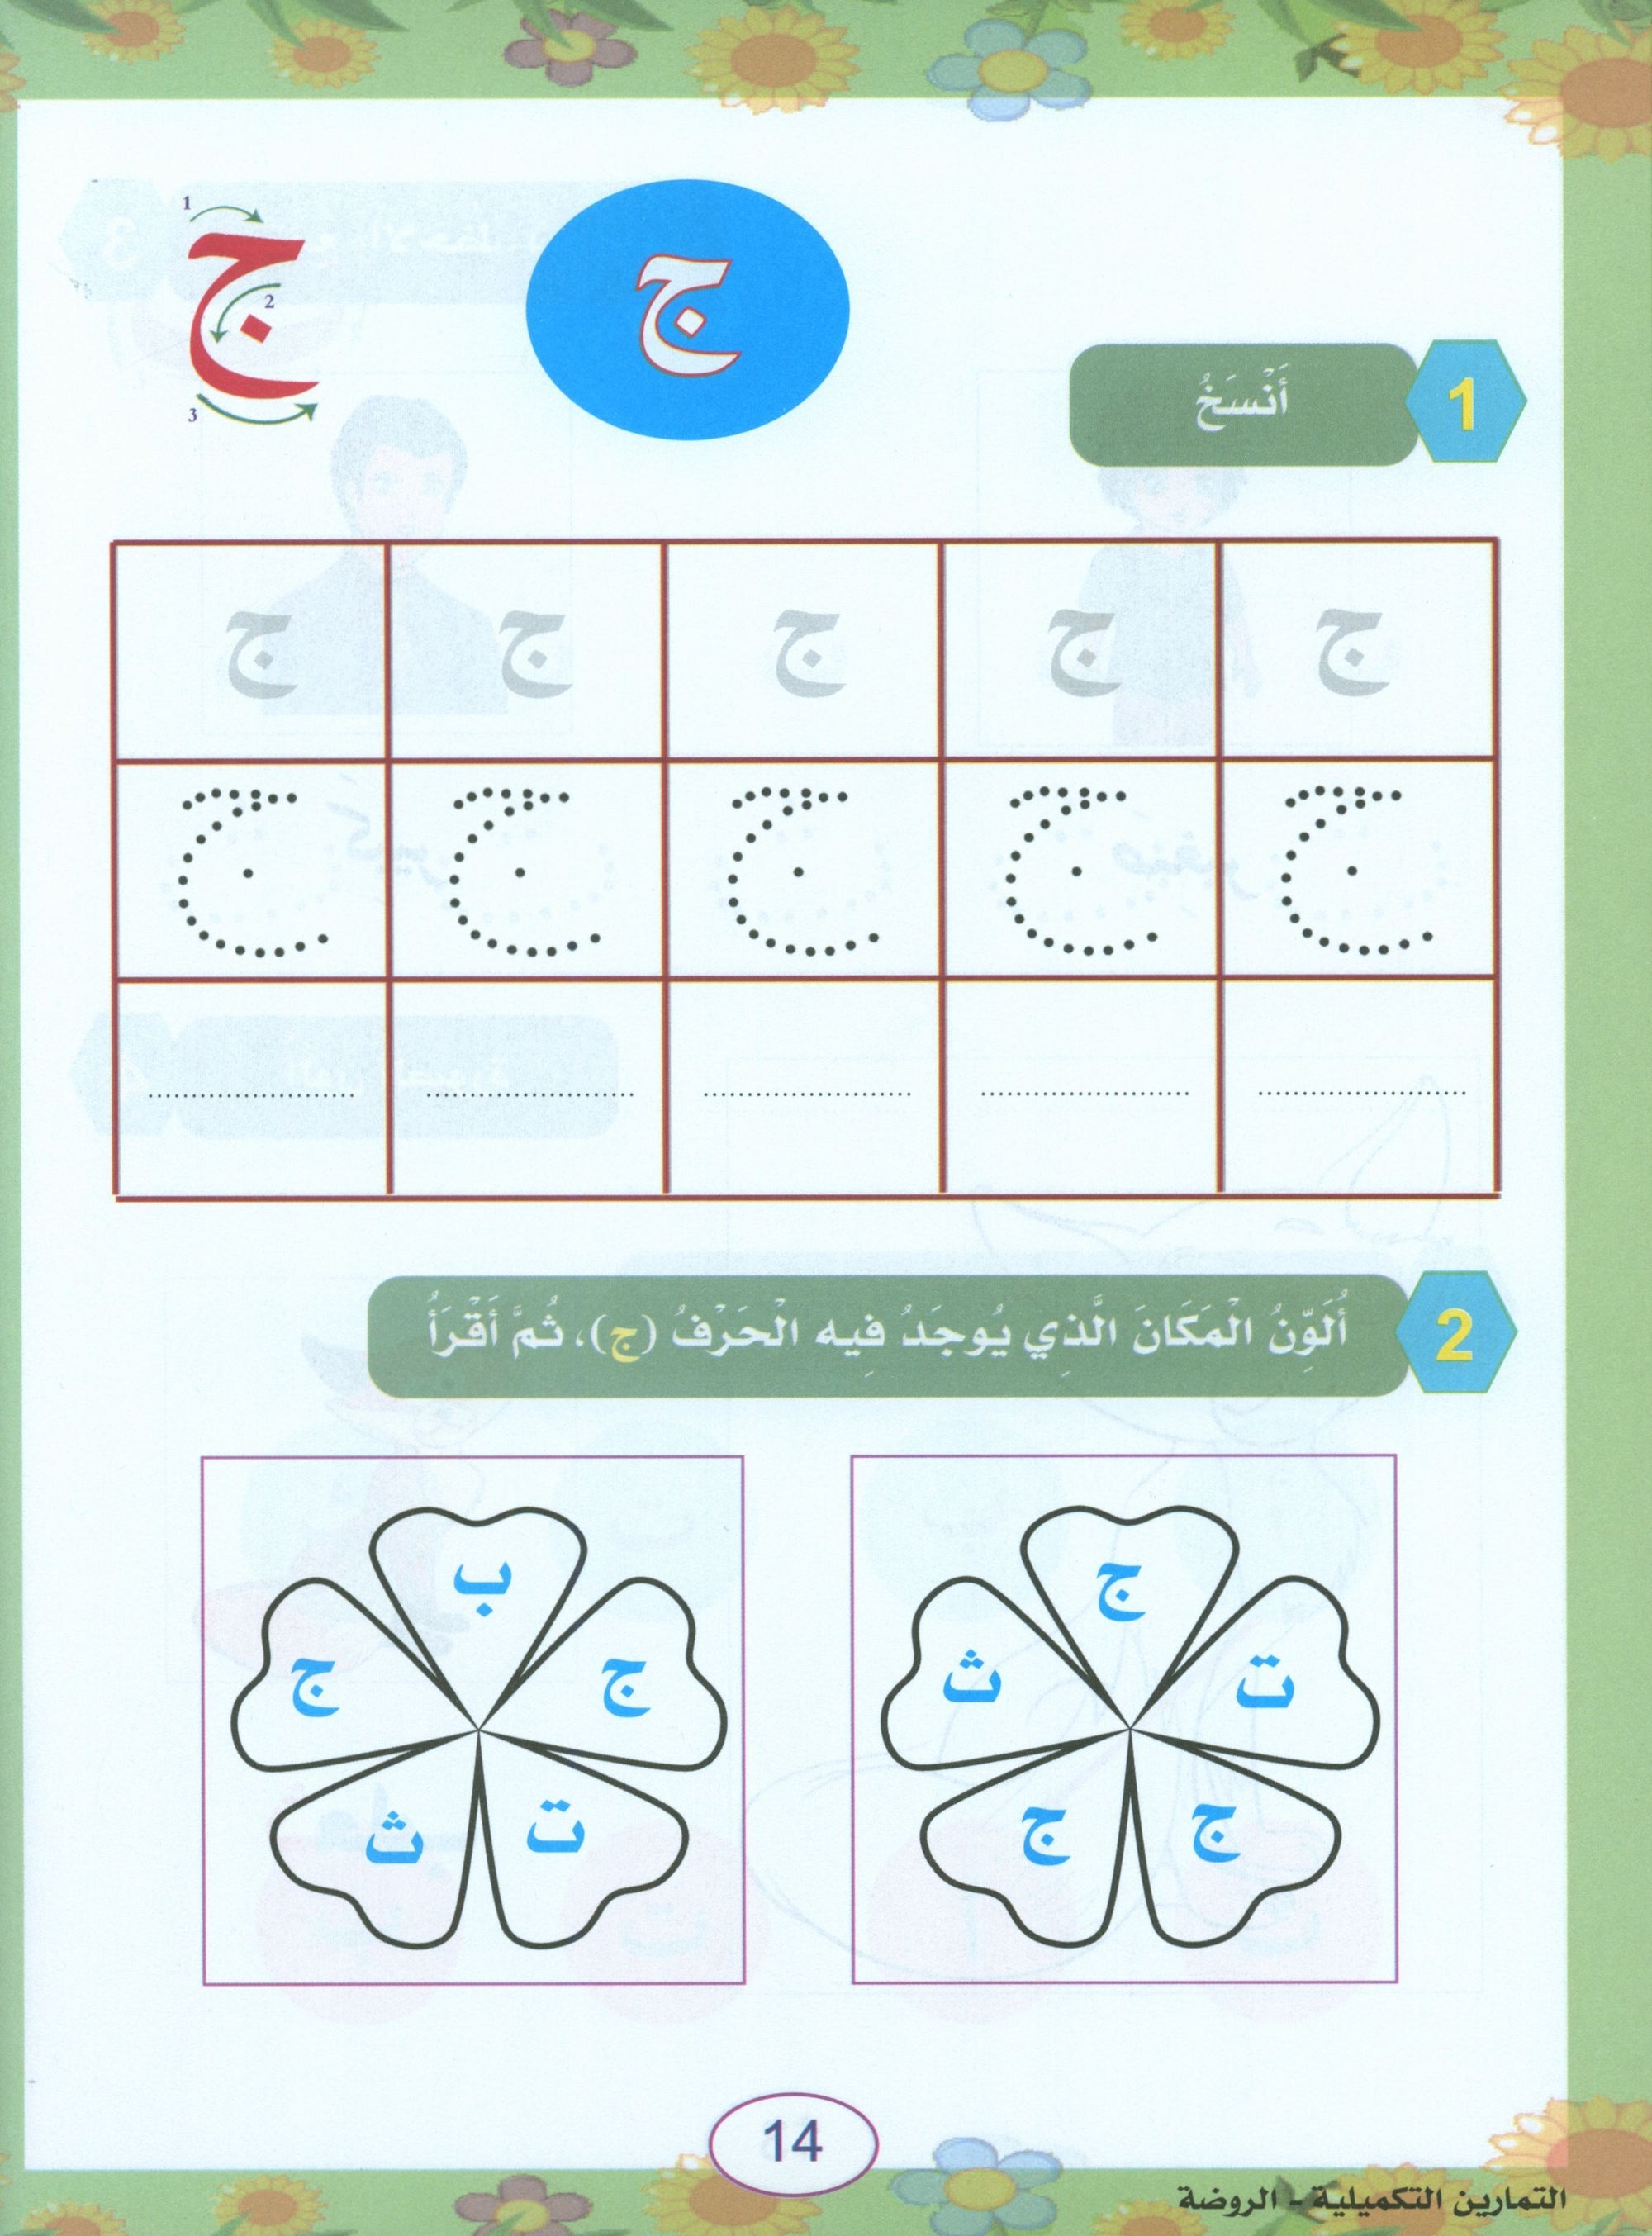 In the Arabic Garden Workbook Level KG1 في حديقة اللغة العربية